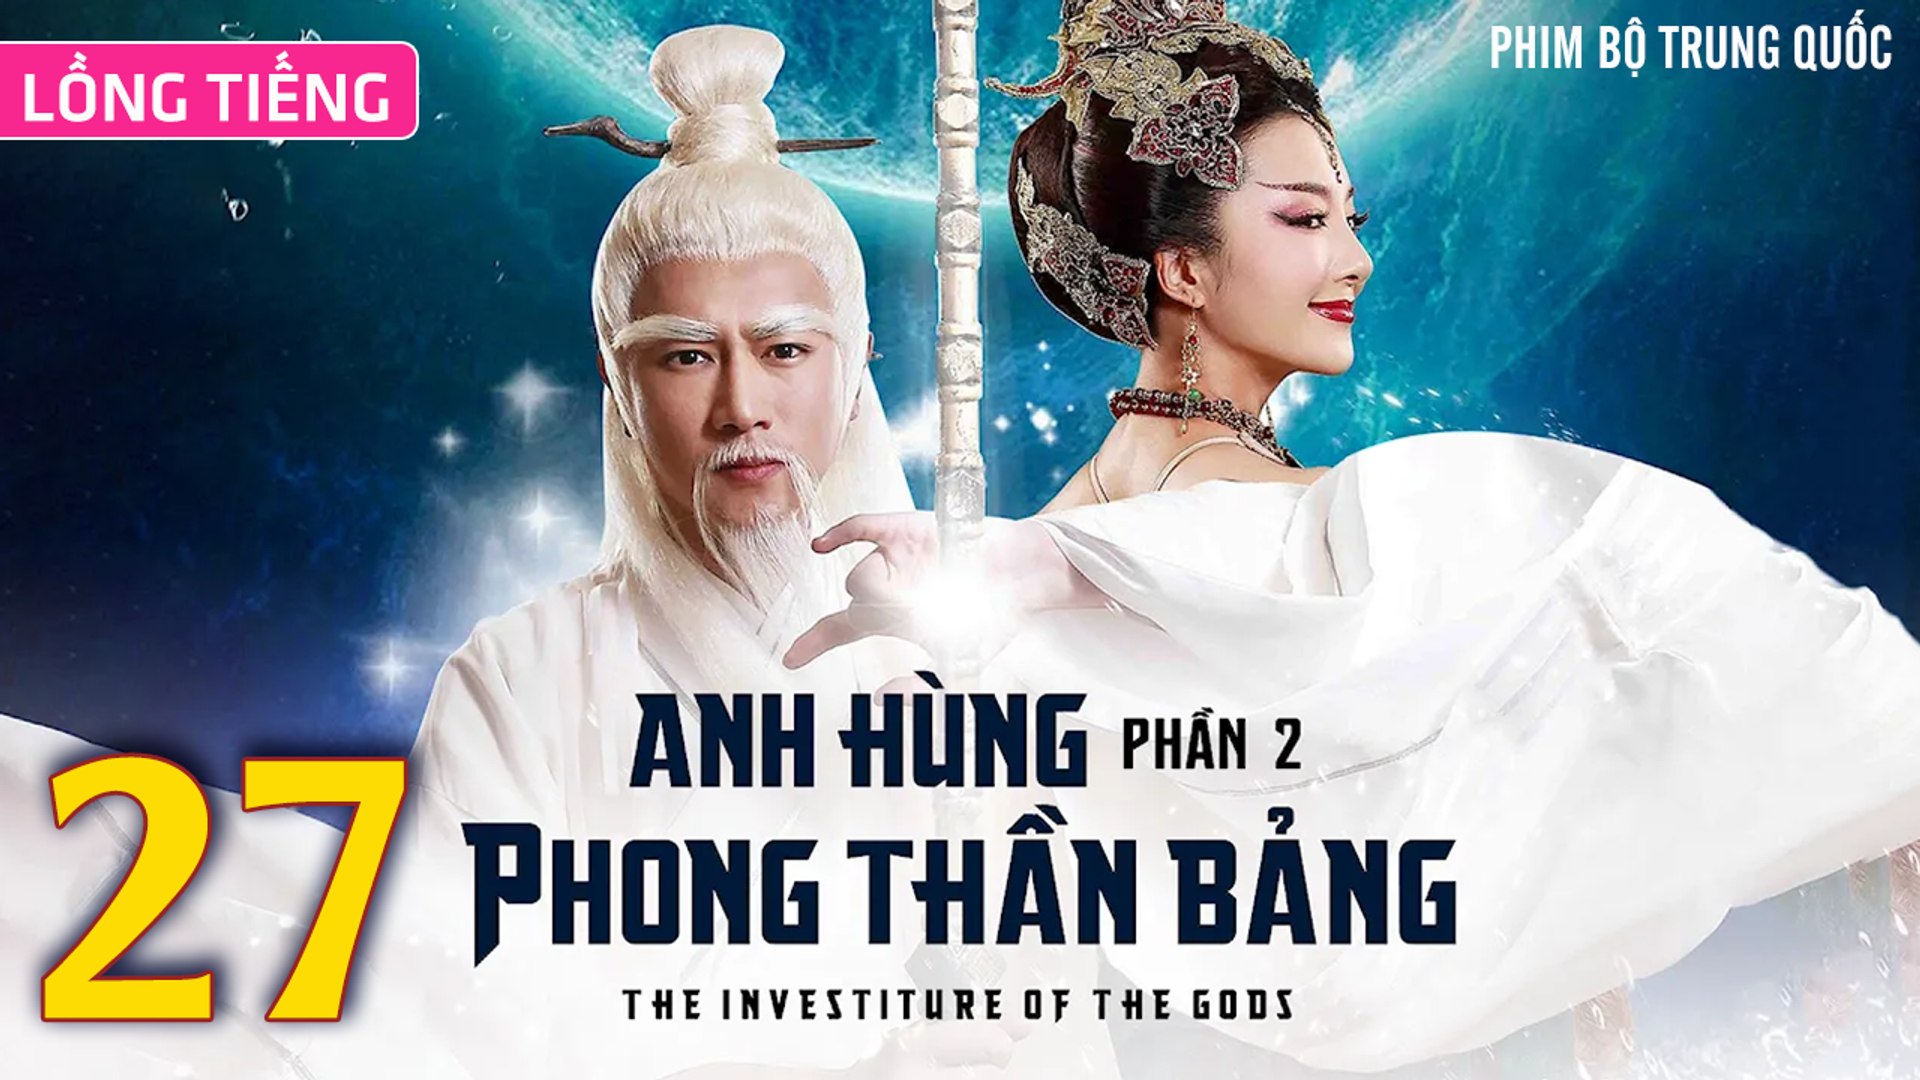 ⁣Phim Bộ Hay: ANH HÙNG PHONG THẦN BẢNG 2 - Tập 27 (Lồng Tiếng) | Phim Bộ Trung Quốc Hay Nhất 2023